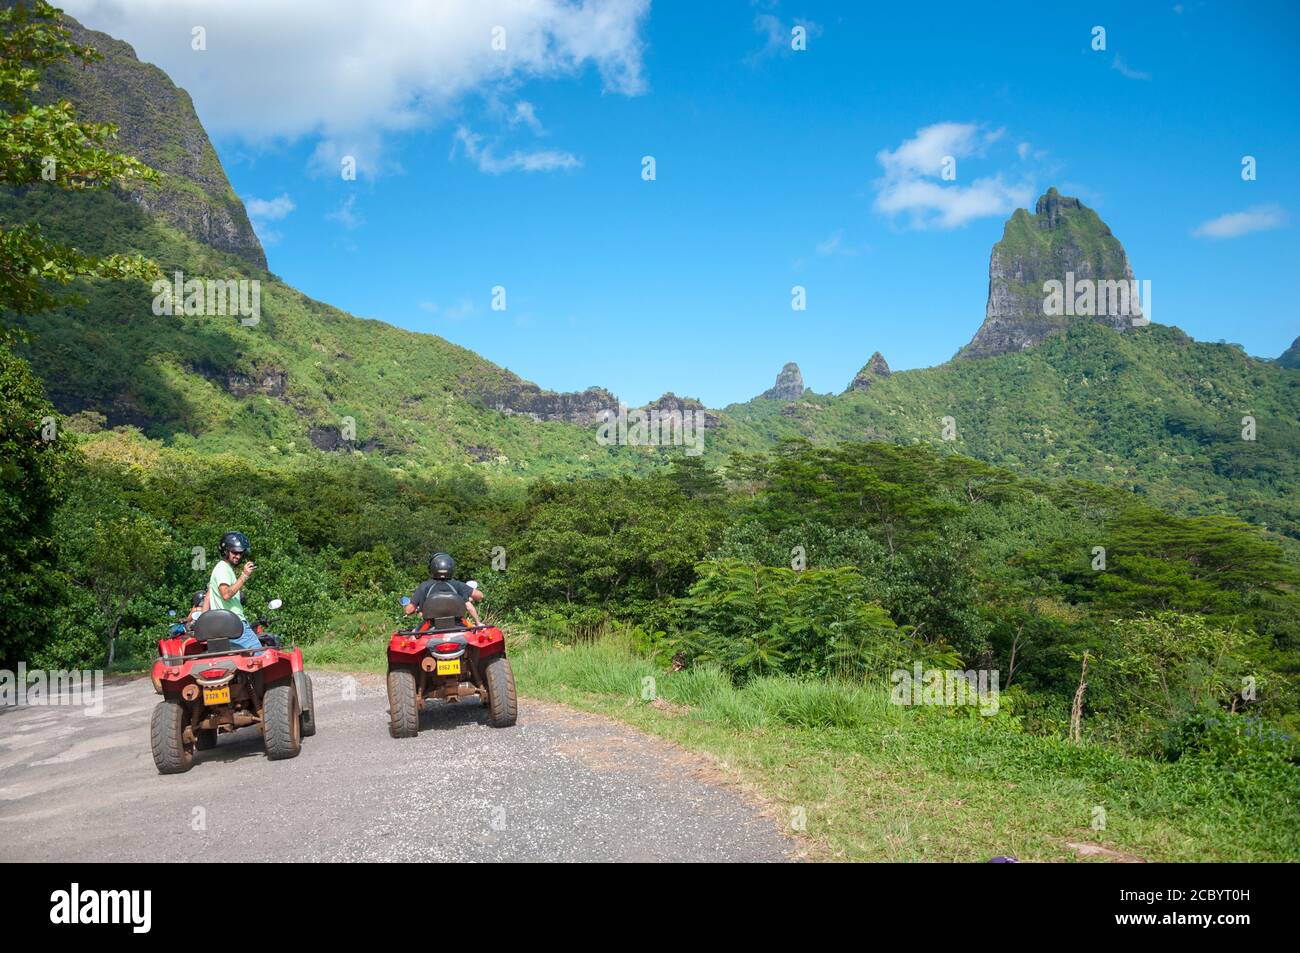 Un petit groupe de jeunes qui portent un casque s'amuser à faire du quad dans une colline près des montagnes rocheuses de Moorea, Polynésie française. Banque D'Images